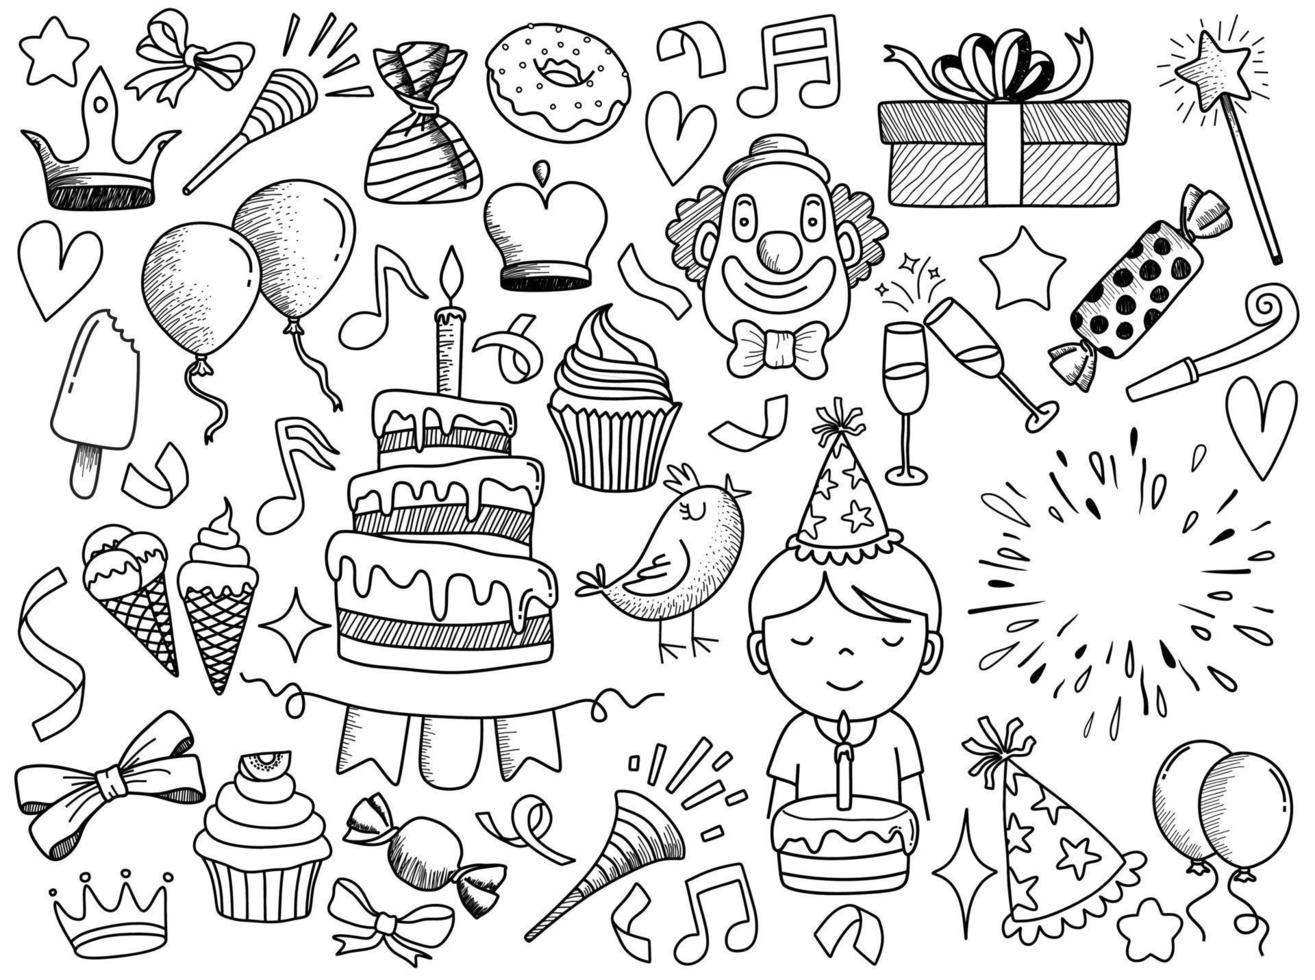 ensemble d'objets et de symboles de dessin animé de doodle sur la fête d'anniversaire. vecteur